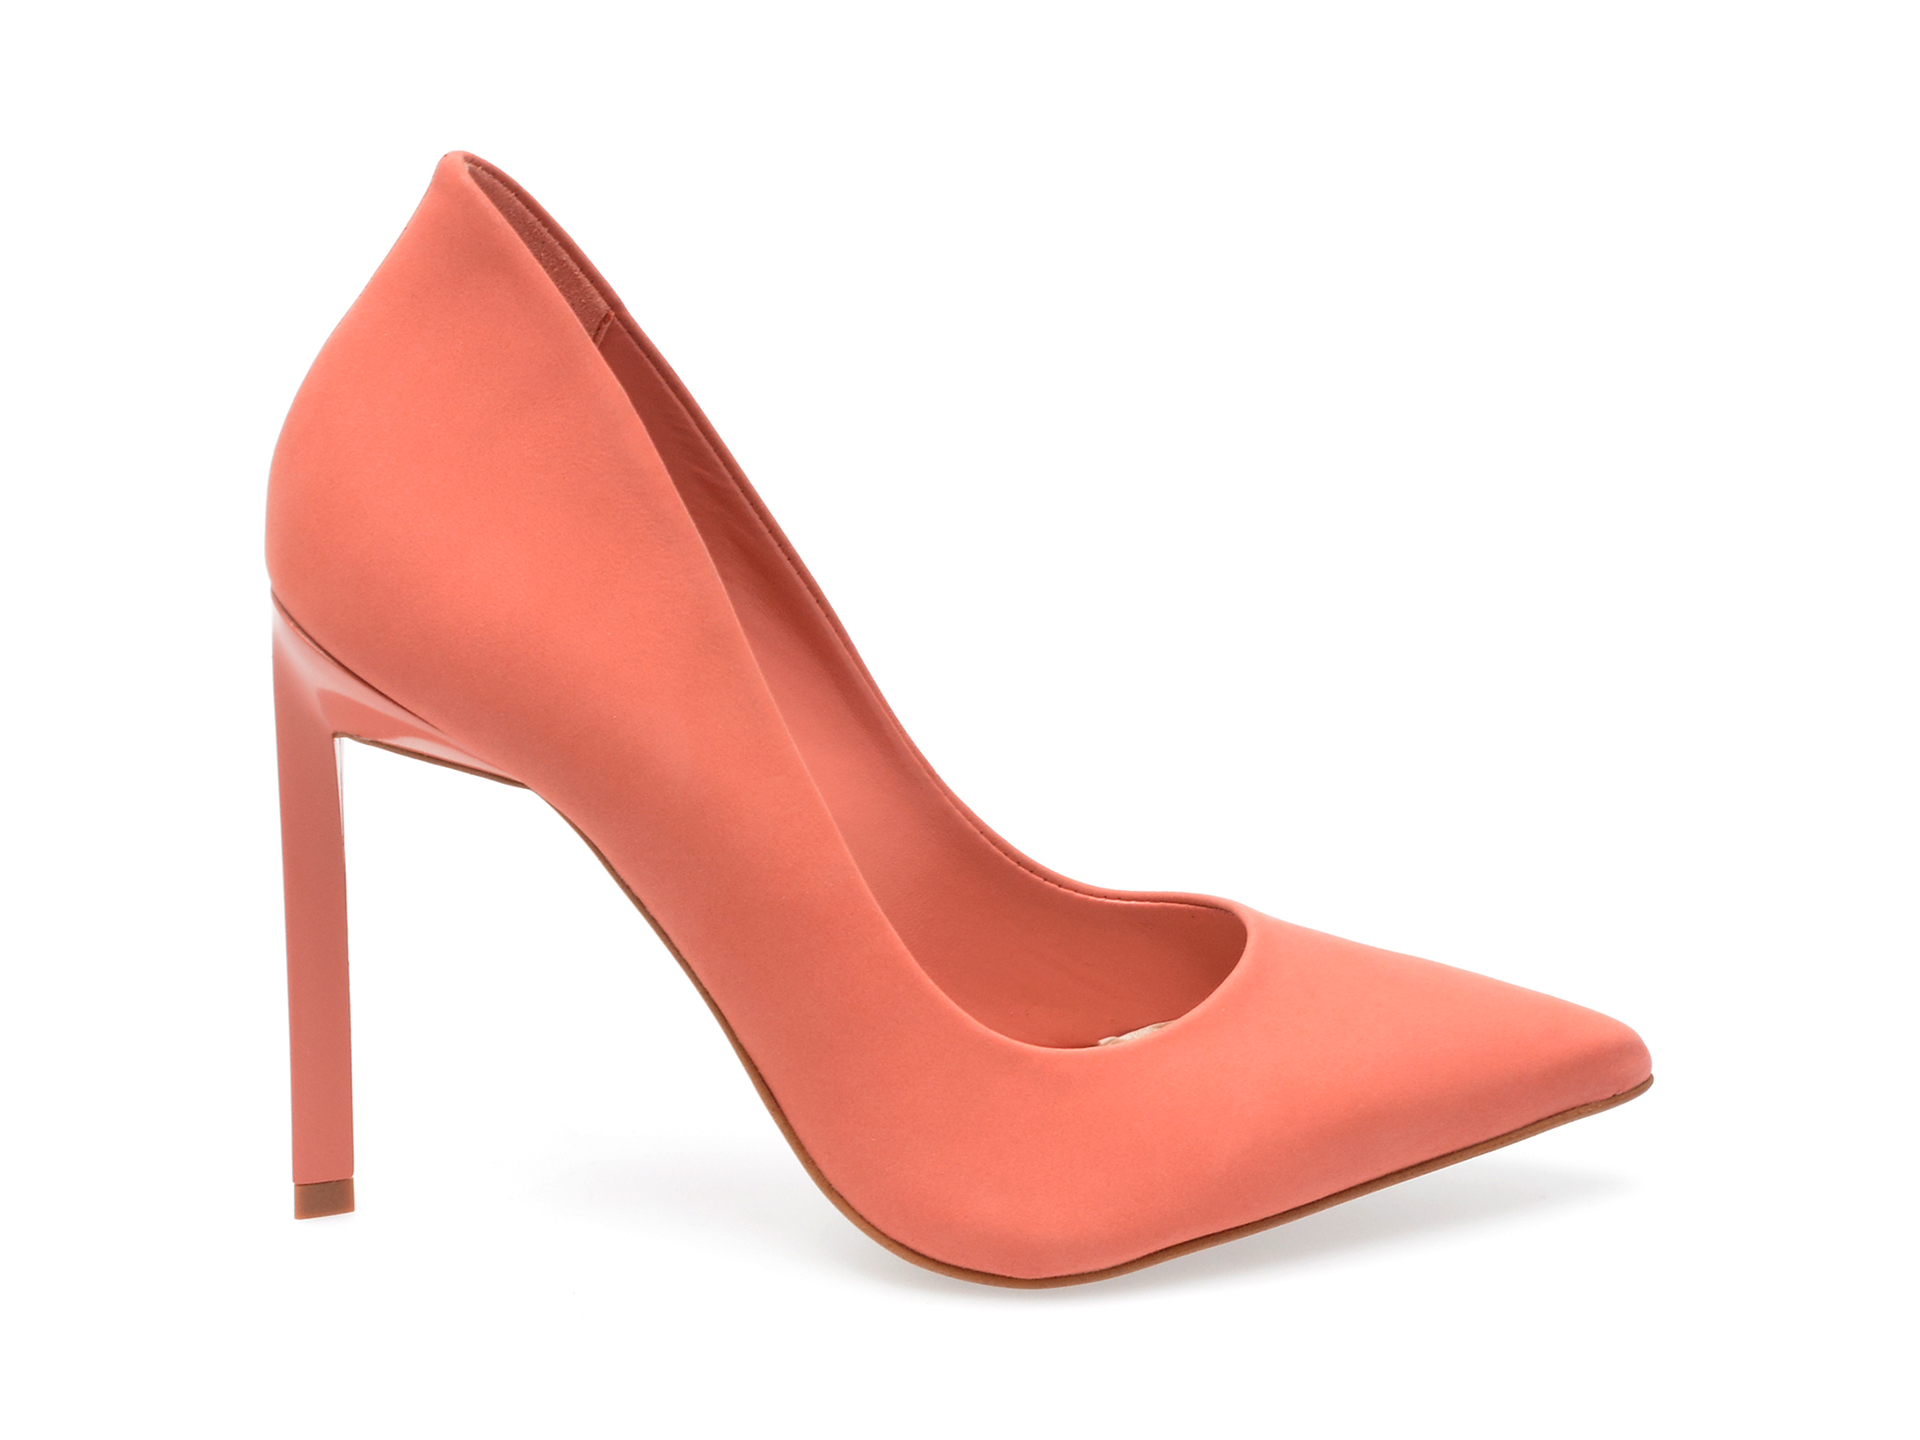 Poze Pantofi ALDO roz, KENNEDI690, din nabuc Tezyo